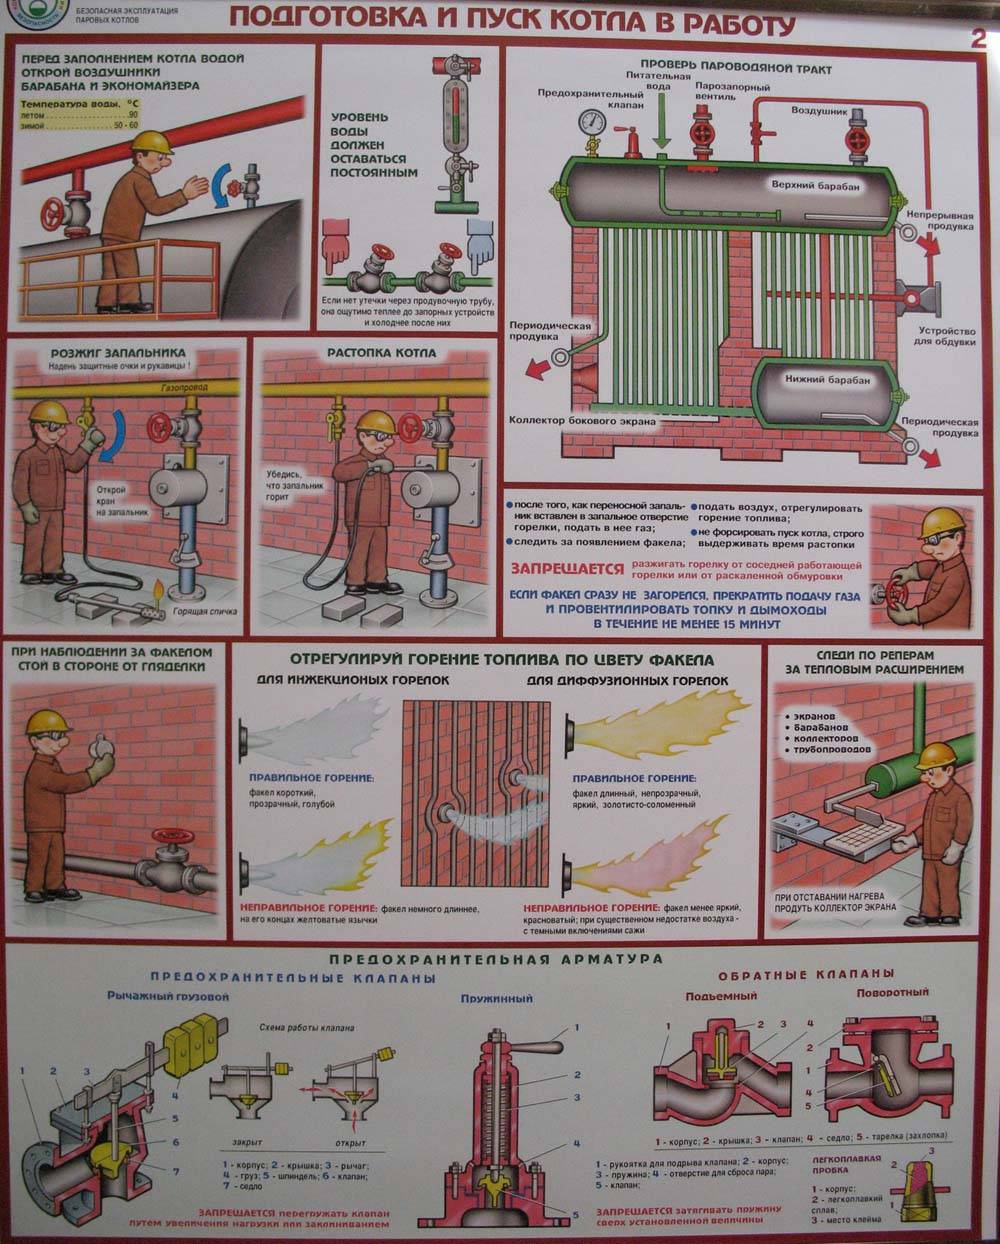 Как включить газовый котел: руководство и полезные рекомендации по эксплуатации. как правильно включить газовый котел в частном доме своими руками